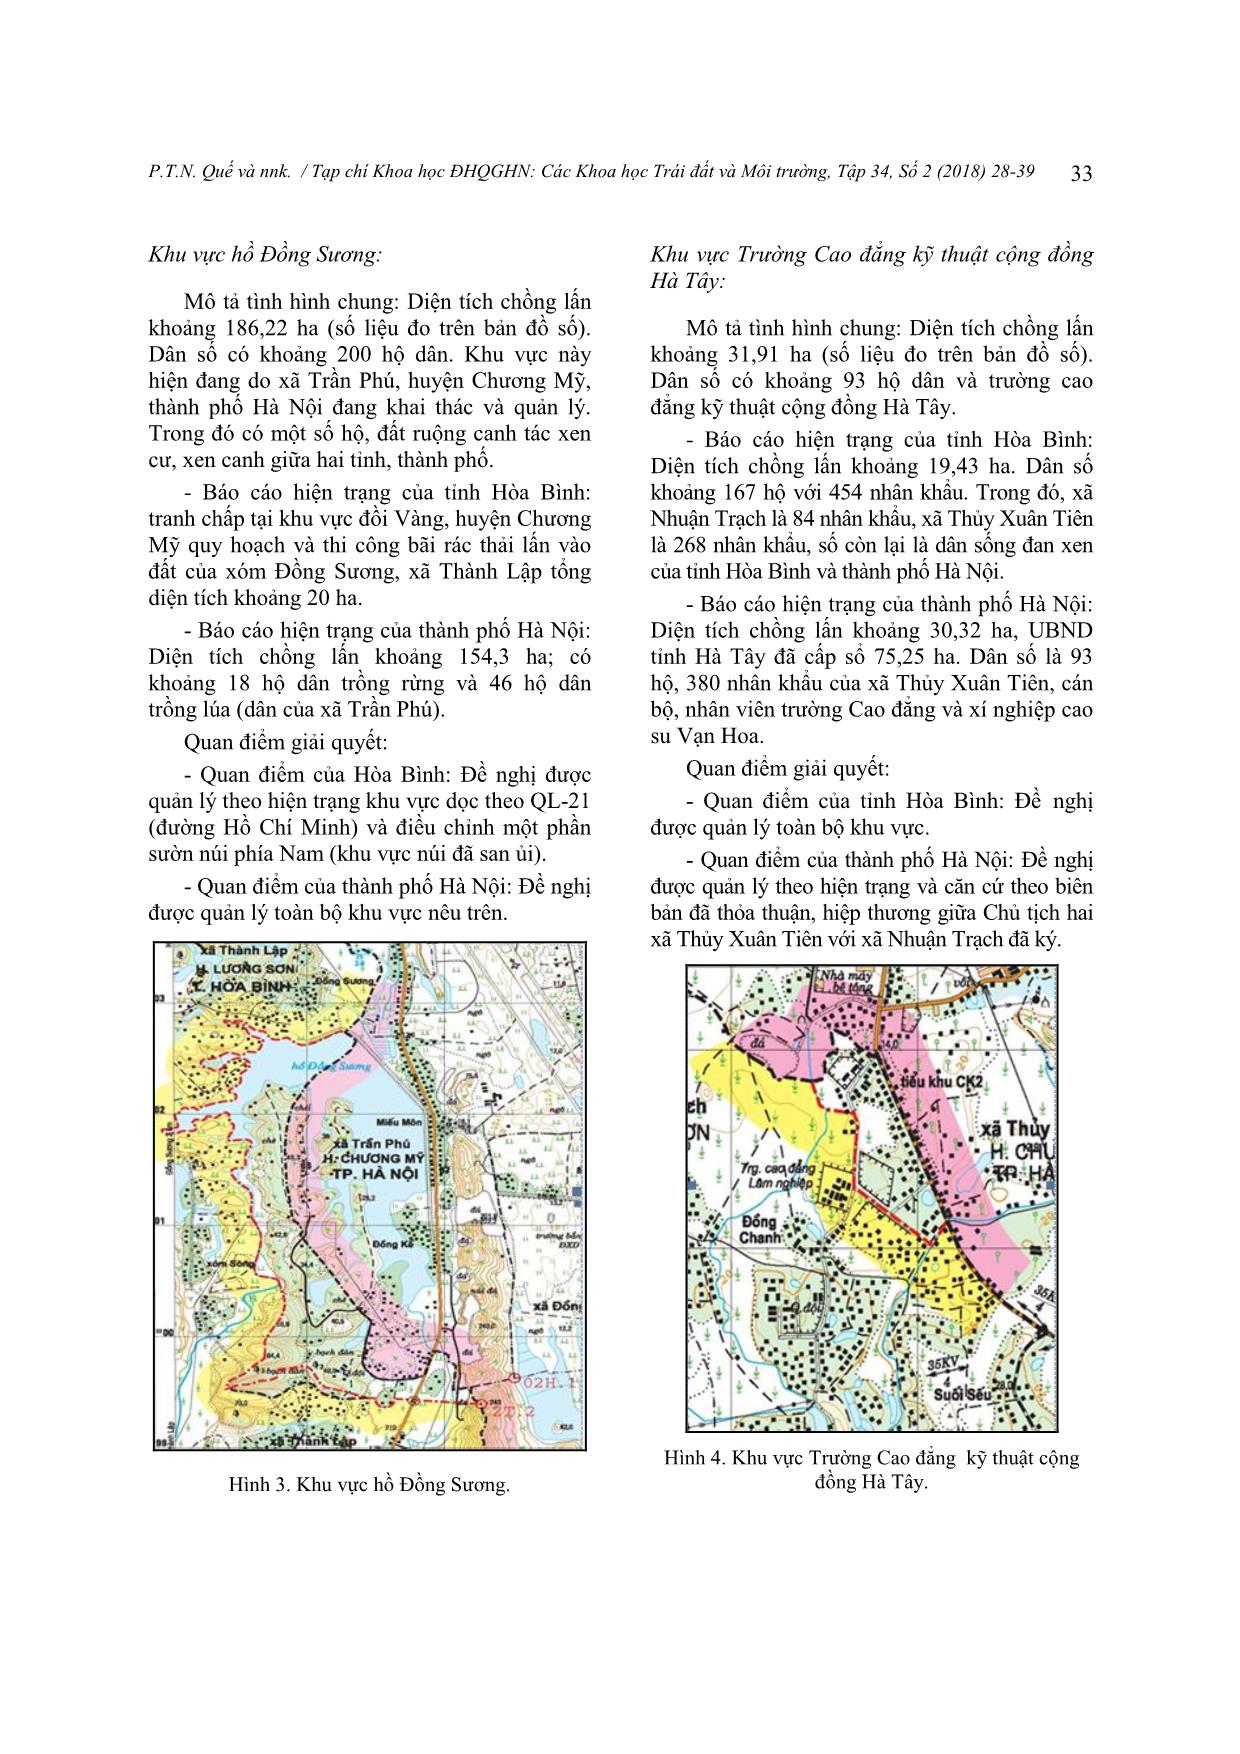 Nghiên cứu phương thức giải quyết tranh chấp đất đai liên quan đến địa giới hành chính khu vực giáp ranh giữa thành phố Hà Nội và tỉnh Hòa Bình trang 6